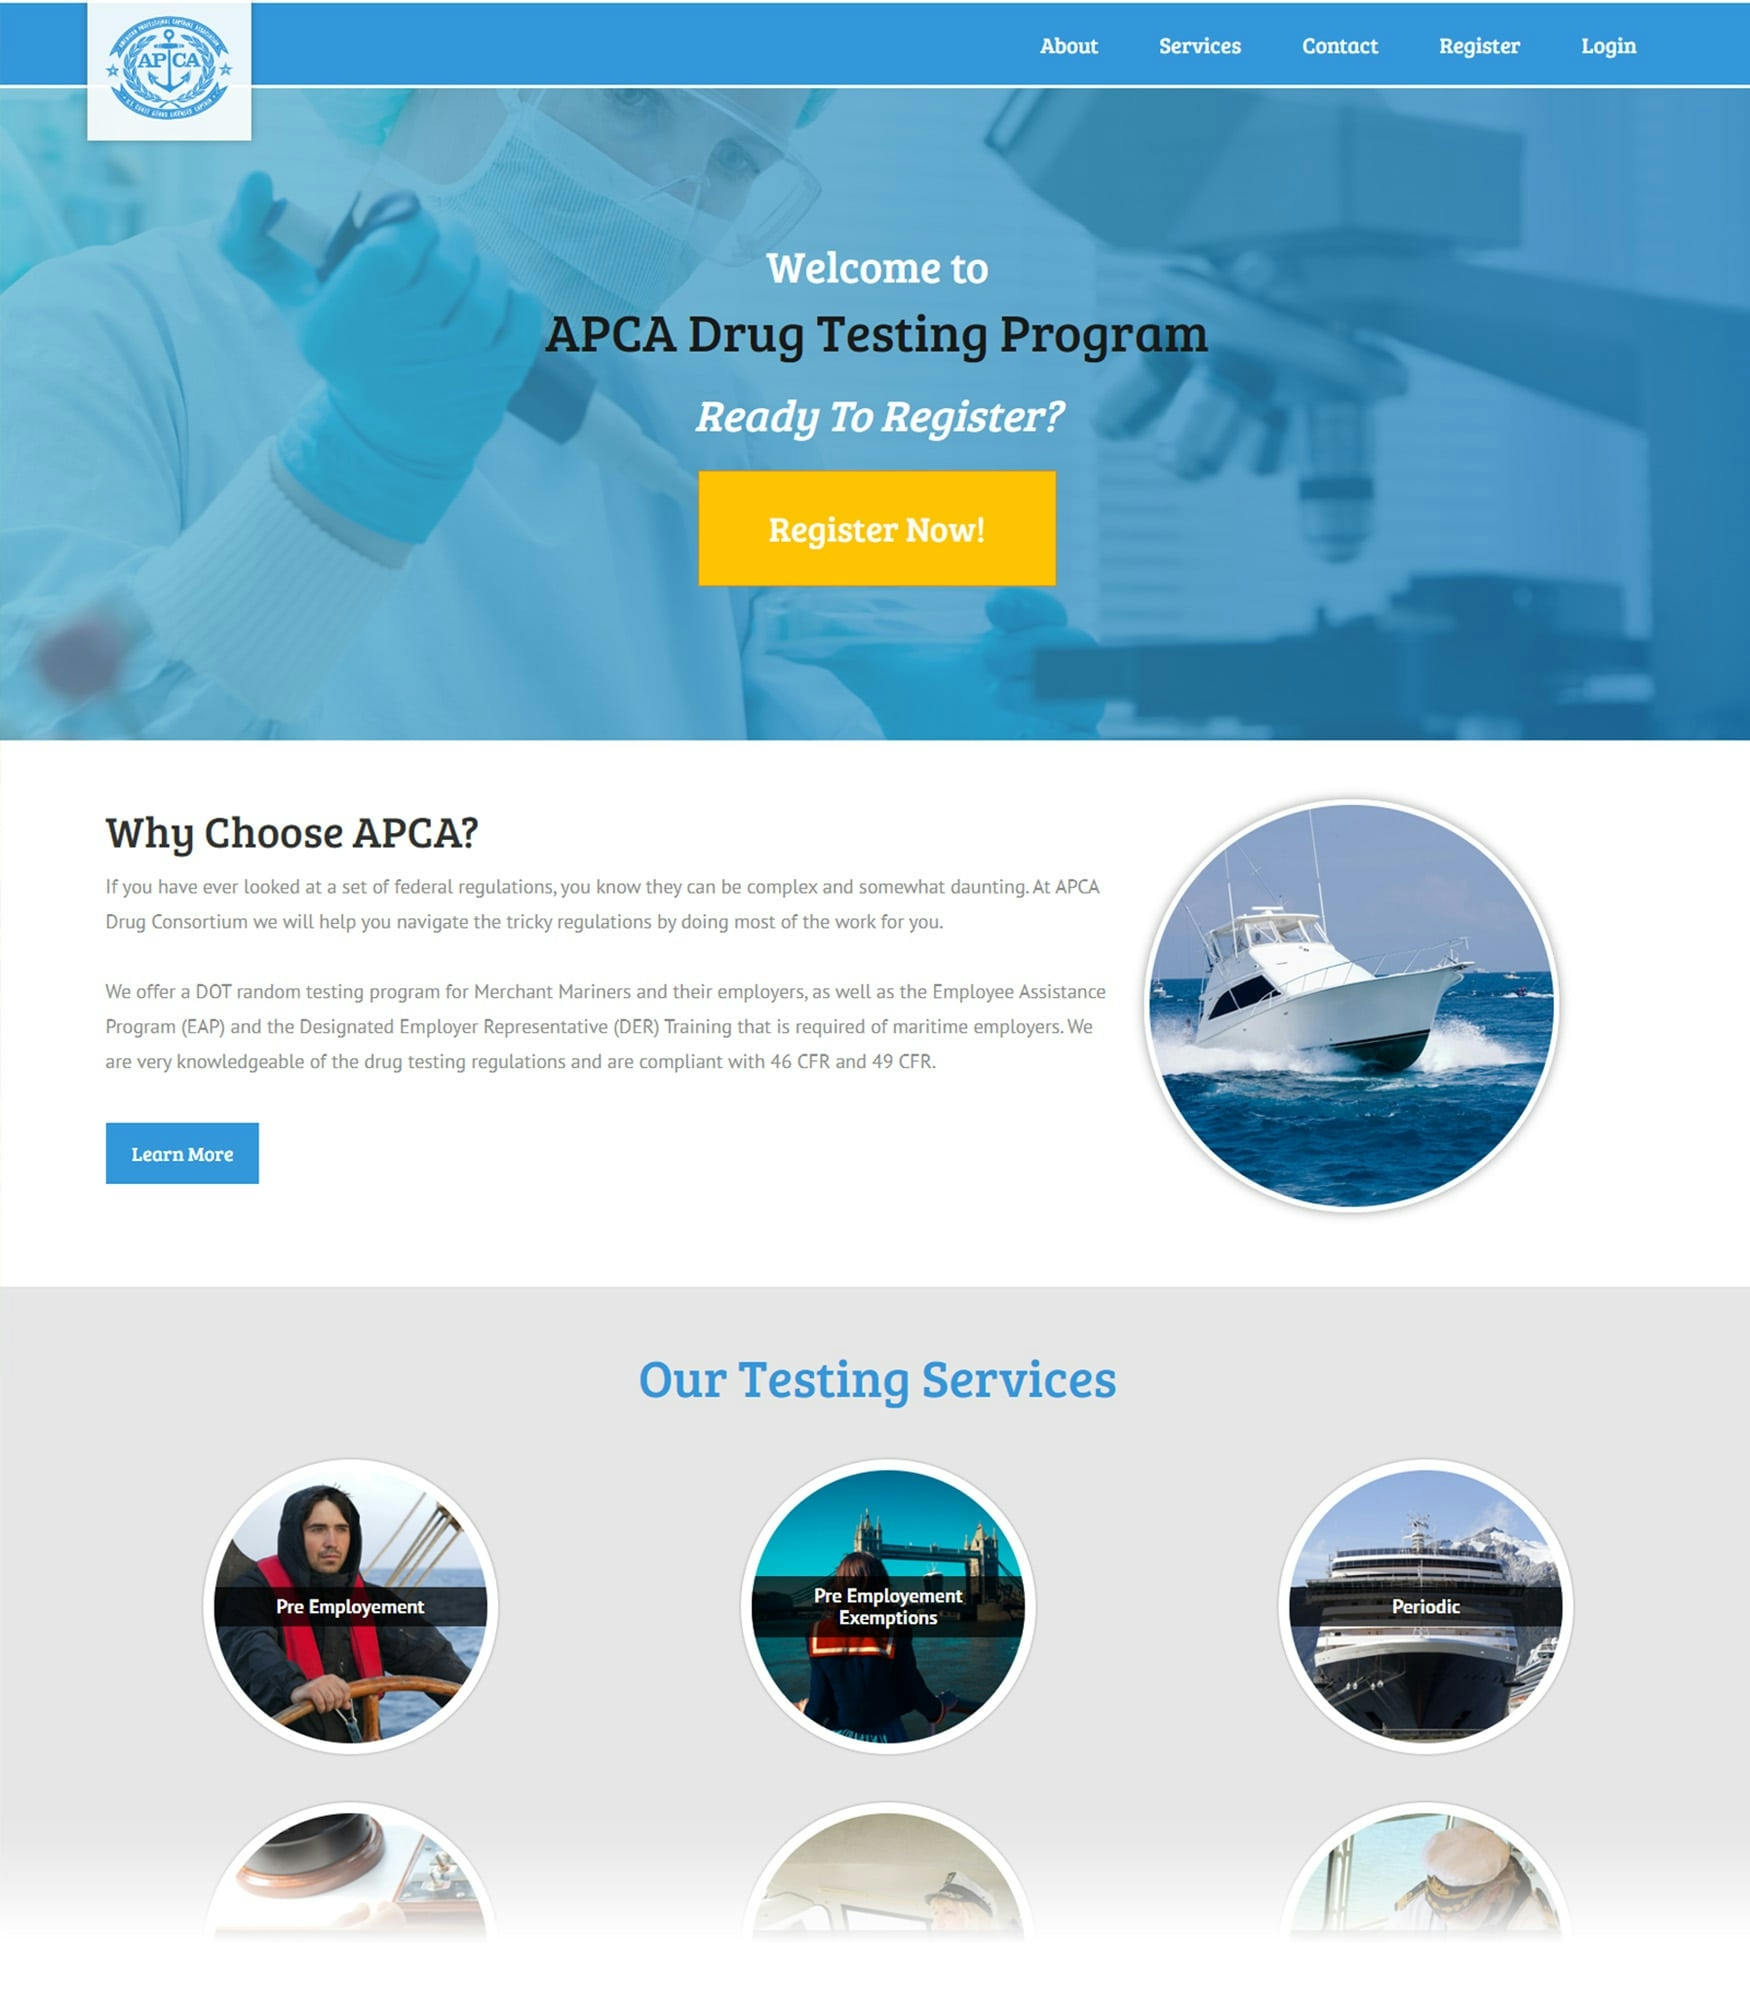 APCA Drug Consortium